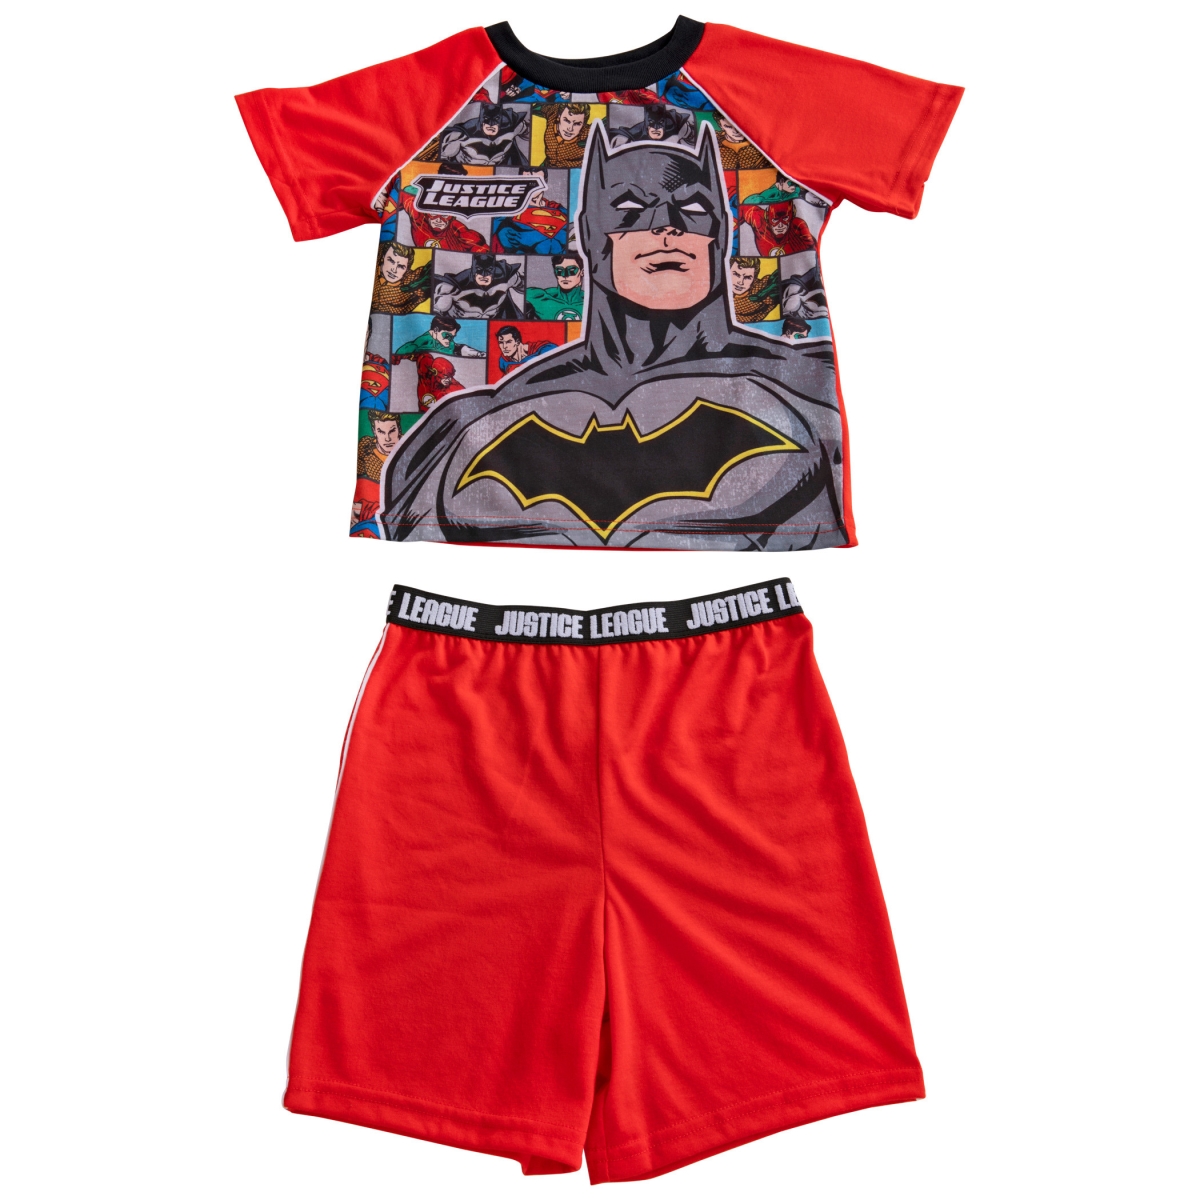 Picture of Batman 830398-size6 Batman & The Justice League Pajama Shirt & Shorts Set - Size 6